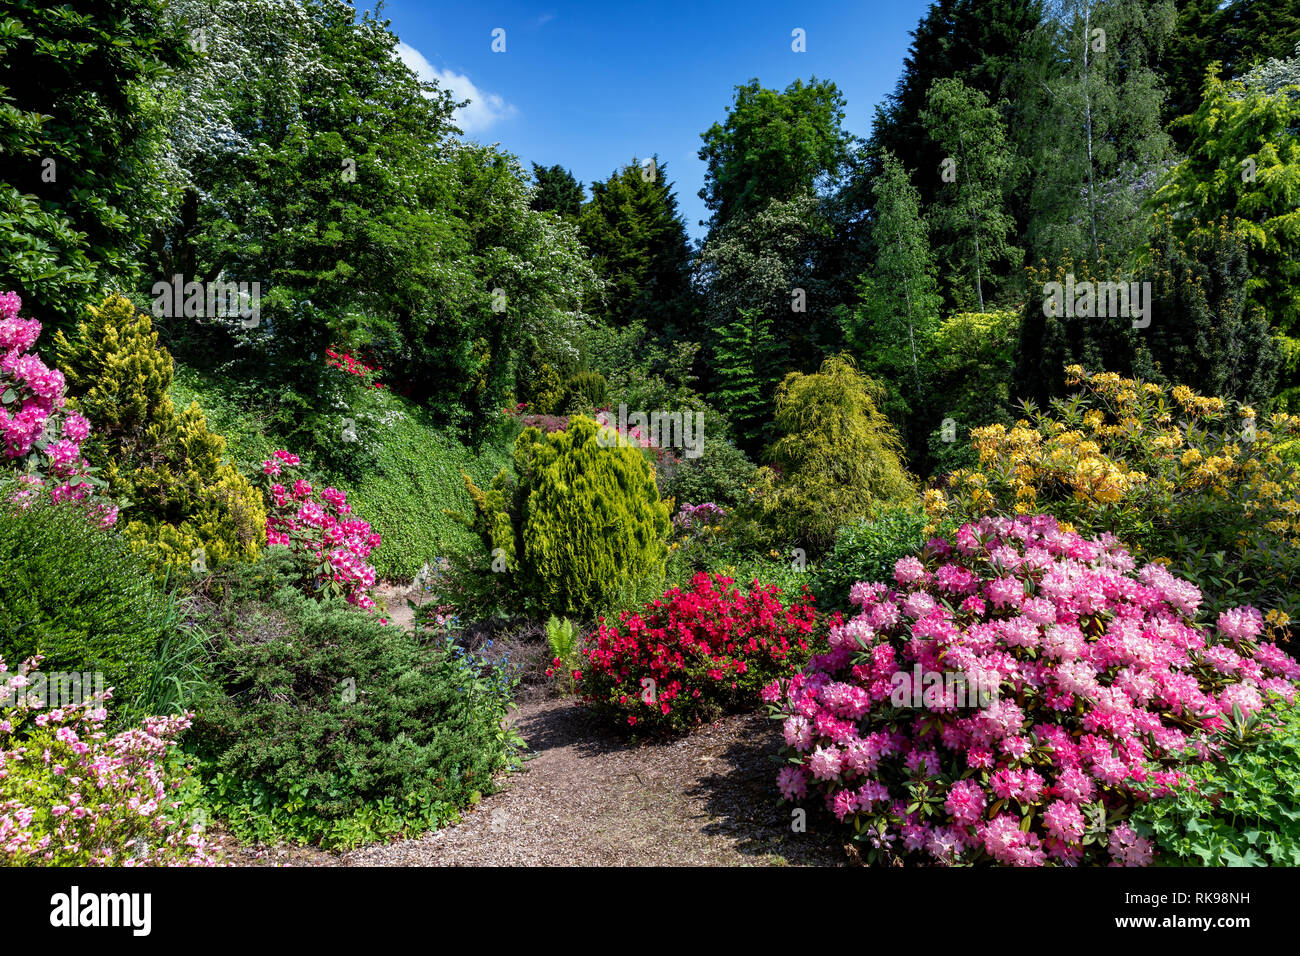 La carrière Jardin Secret, Russells Garden Centre, près de Coventry, England, UK Banque D'Images